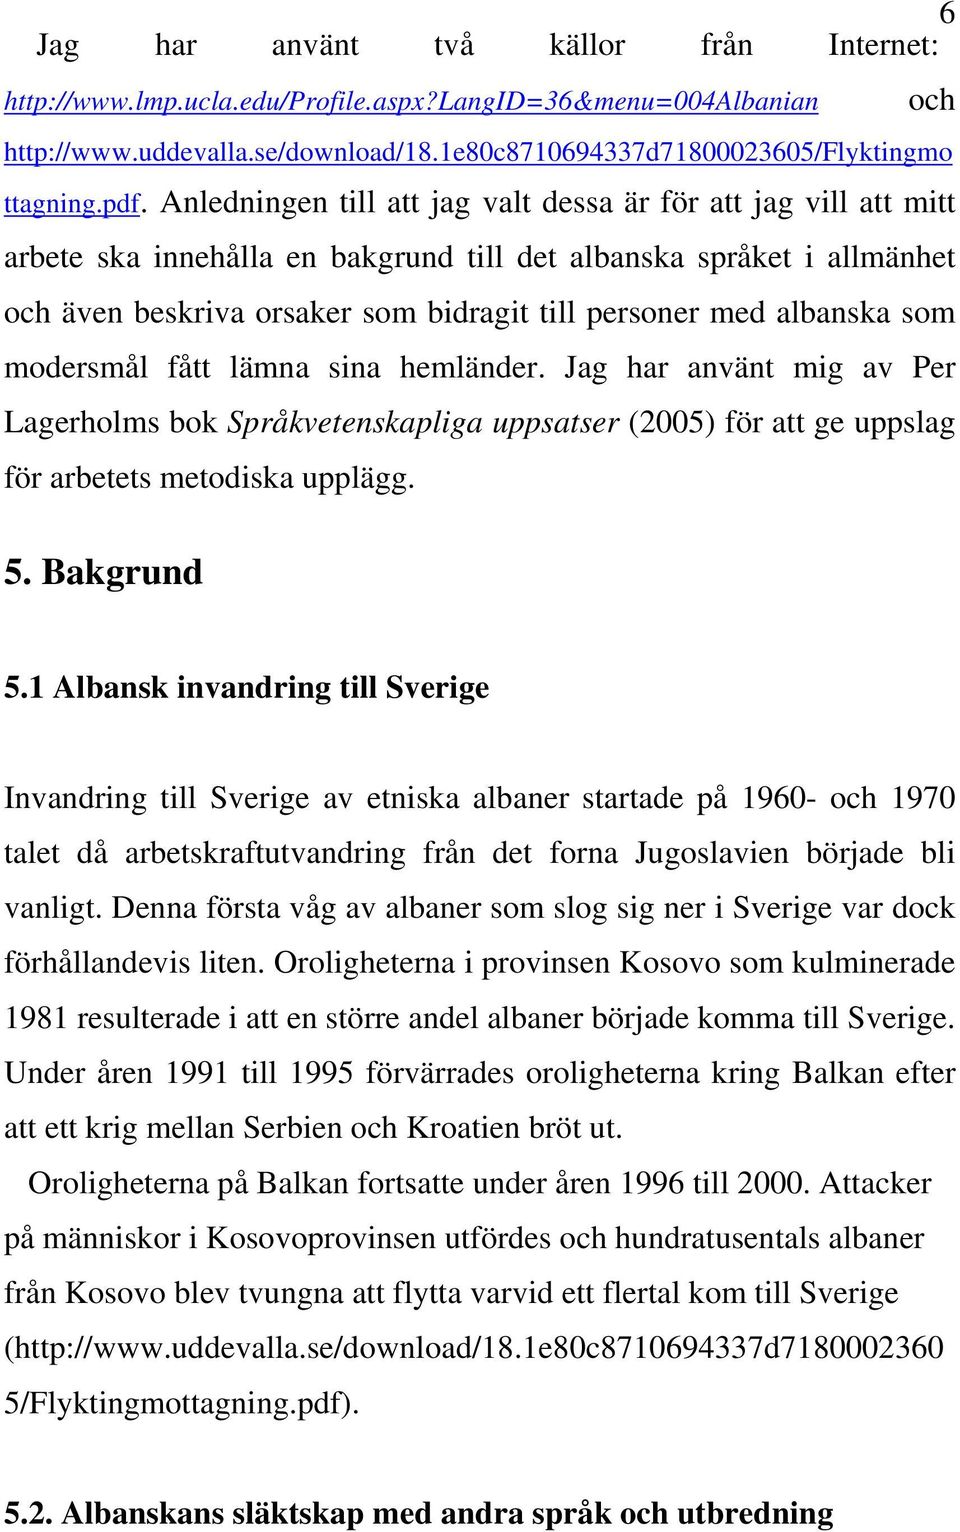 albanska som modersmål fått lämna sina hemländer. Jag har använt mig av Per Lagerholms bok Språkvetenskapliga uppsatser (2005) för att ge uppslag för arbetets metodiska upplägg. 5. Bakgrund och 5.